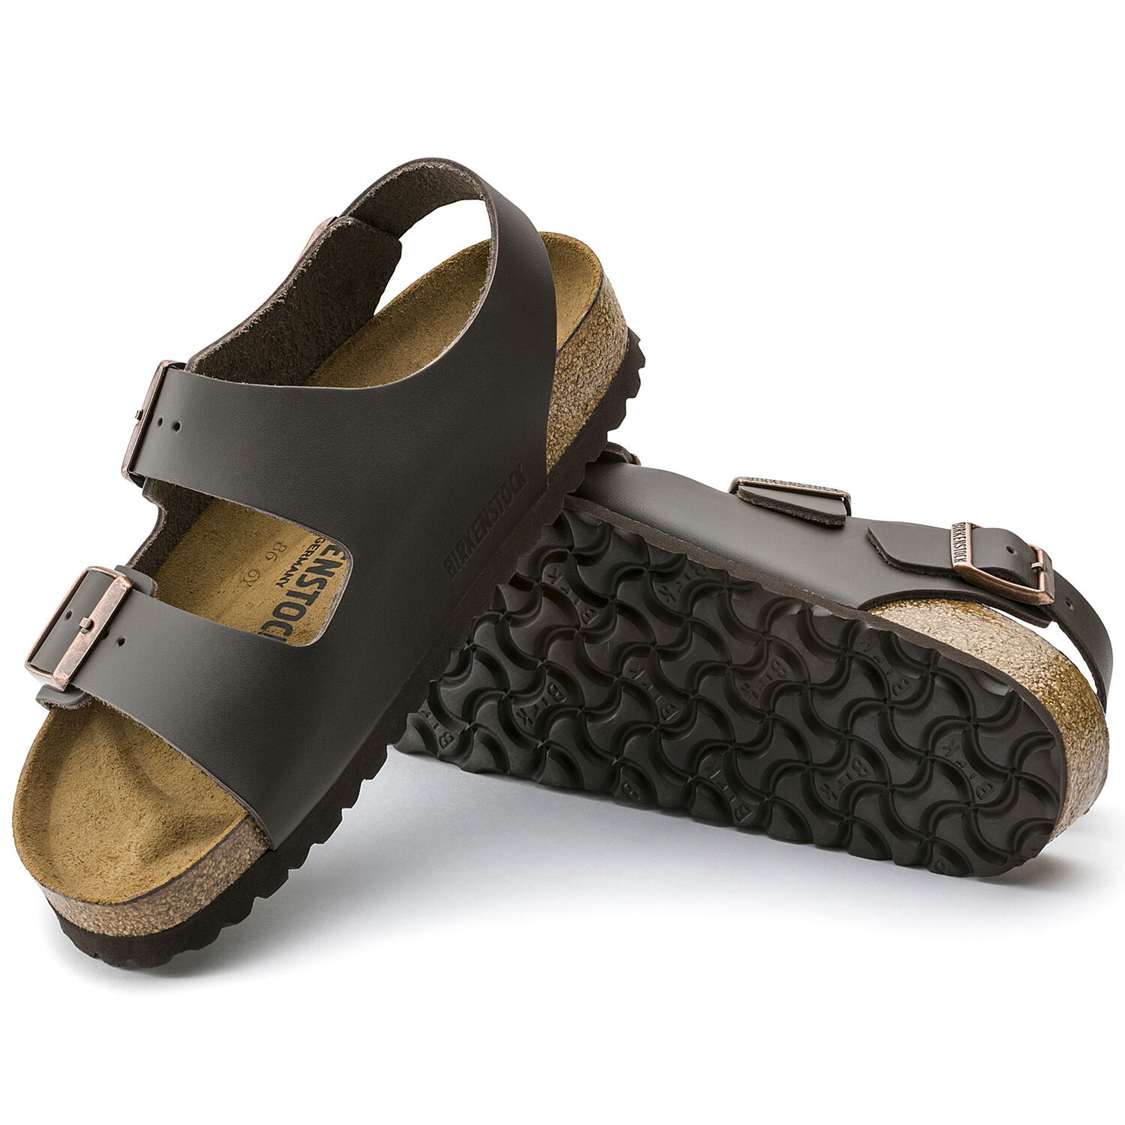 Birkenstock Milano Leather Multi Strap Sandals Dark Brown | GQv4NnC8CIv